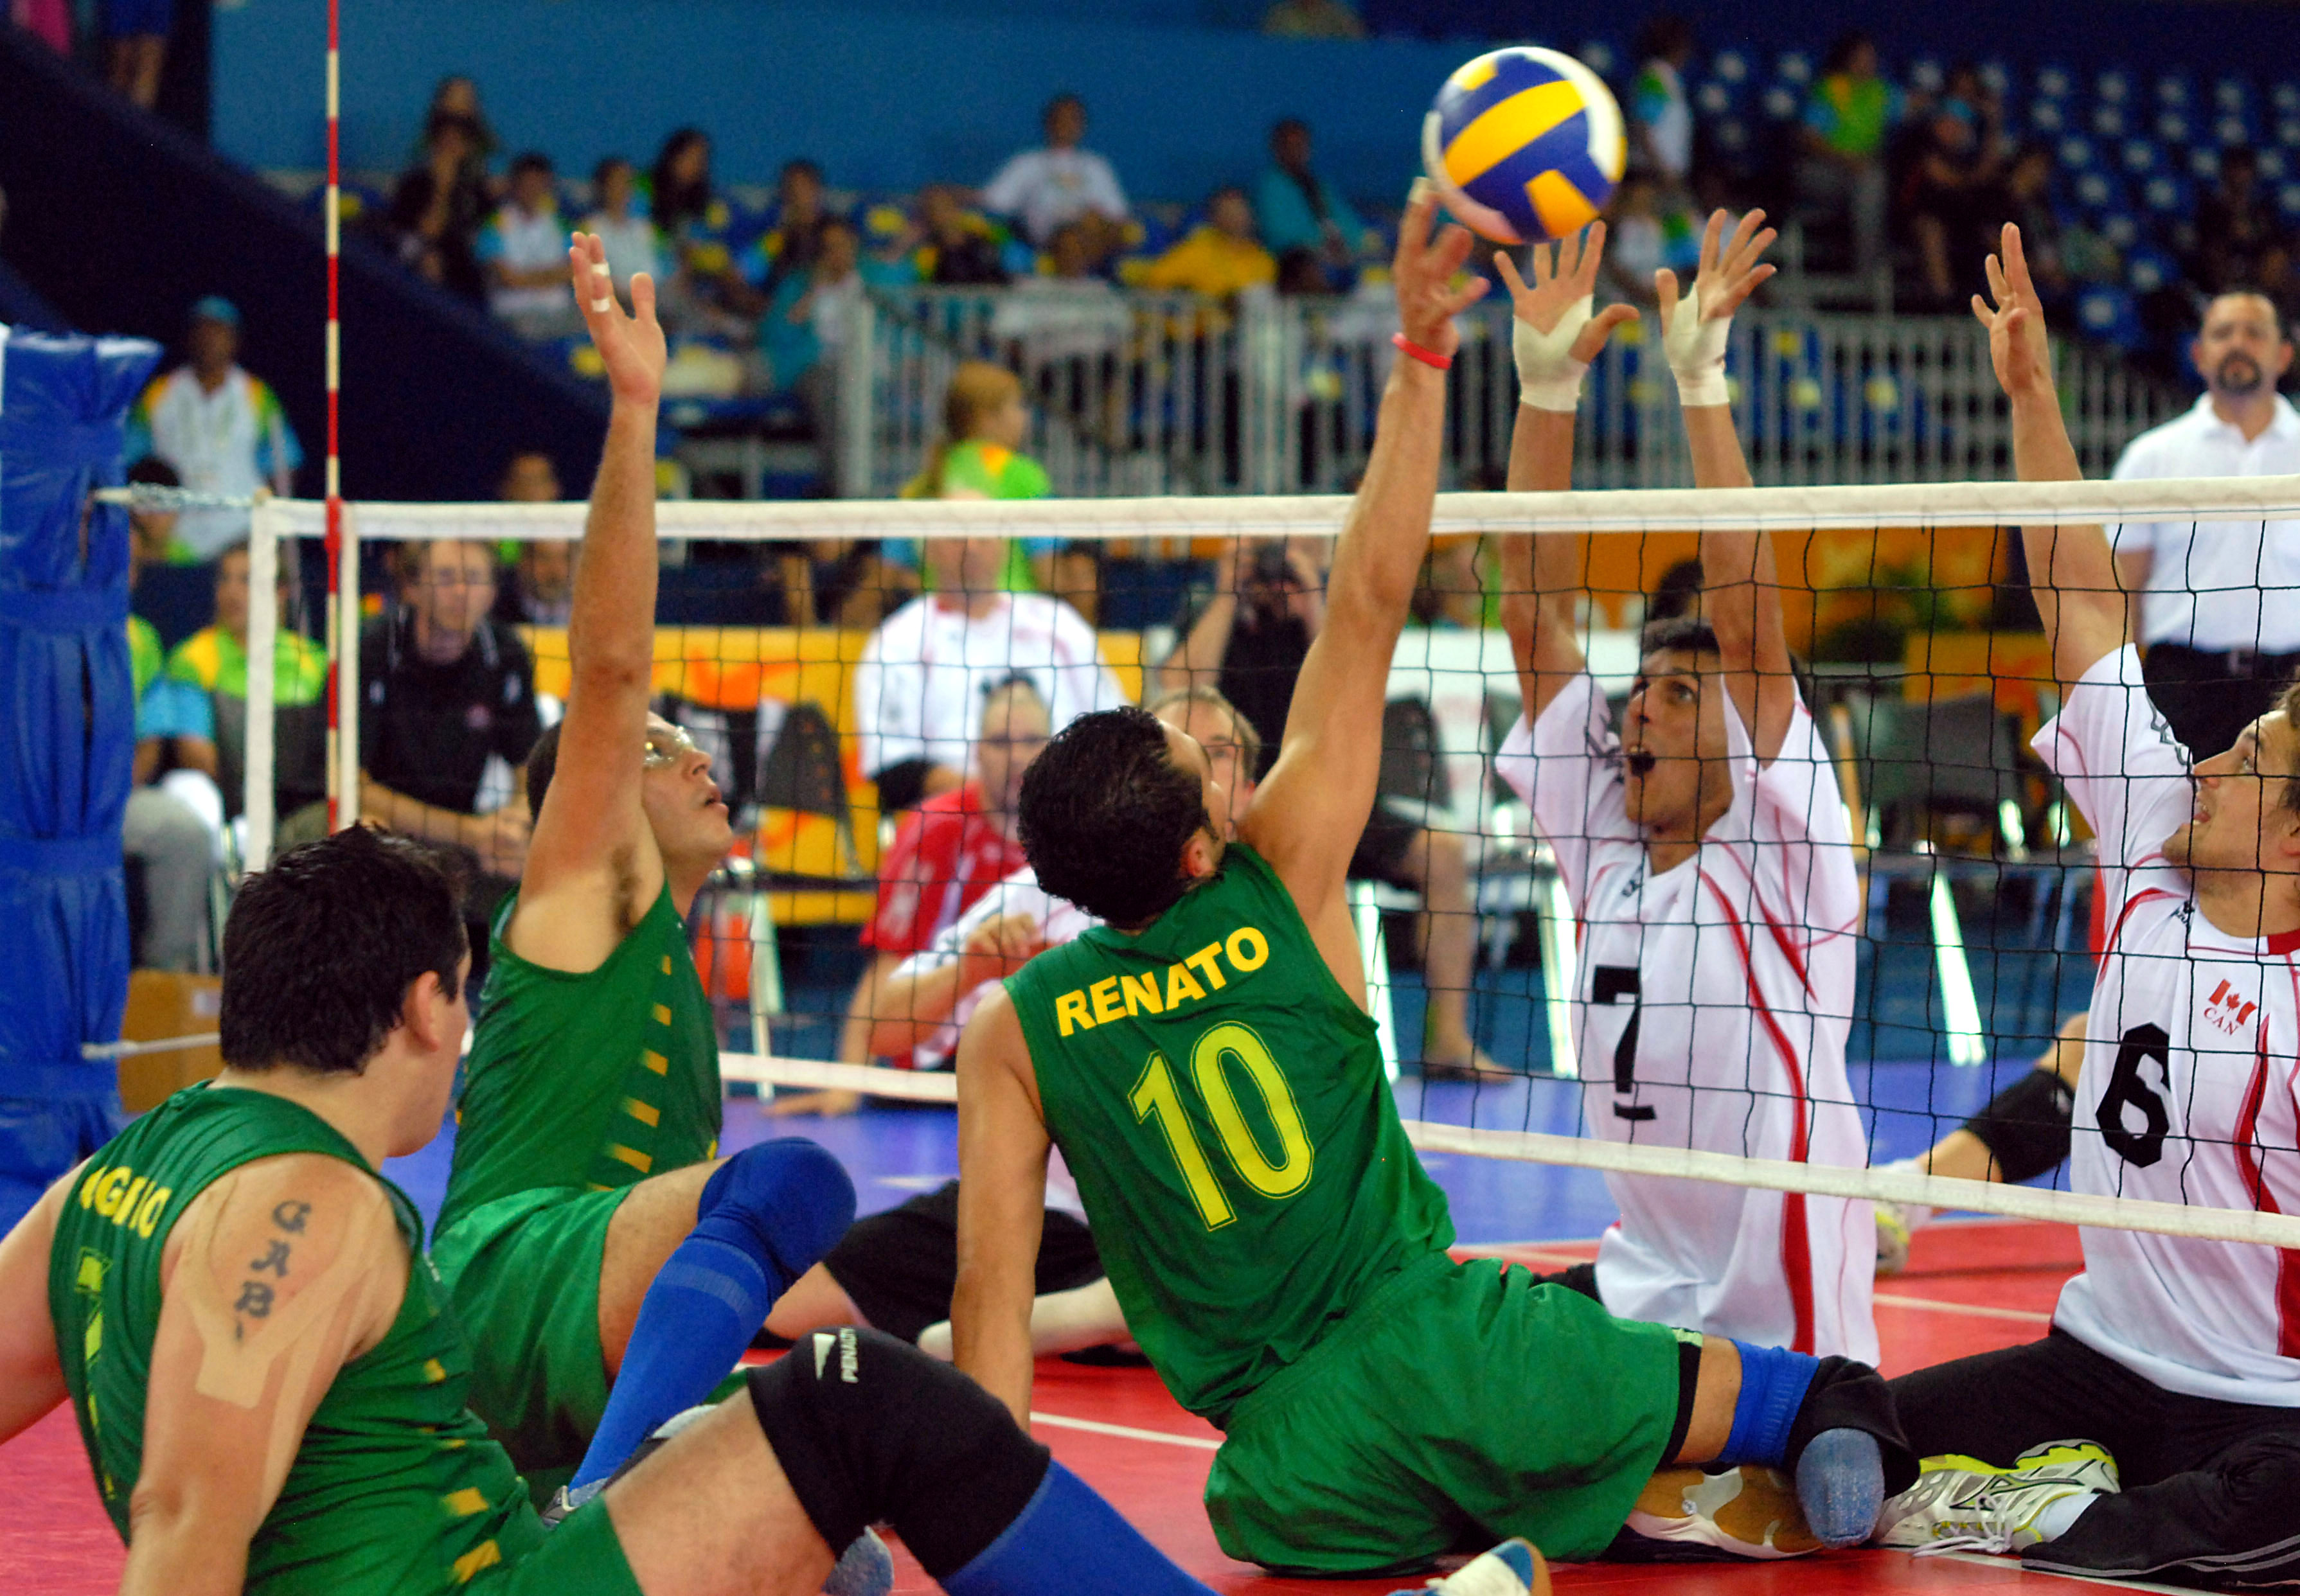 Voleibol Sentado. Paralimpíadas Rio 2016.